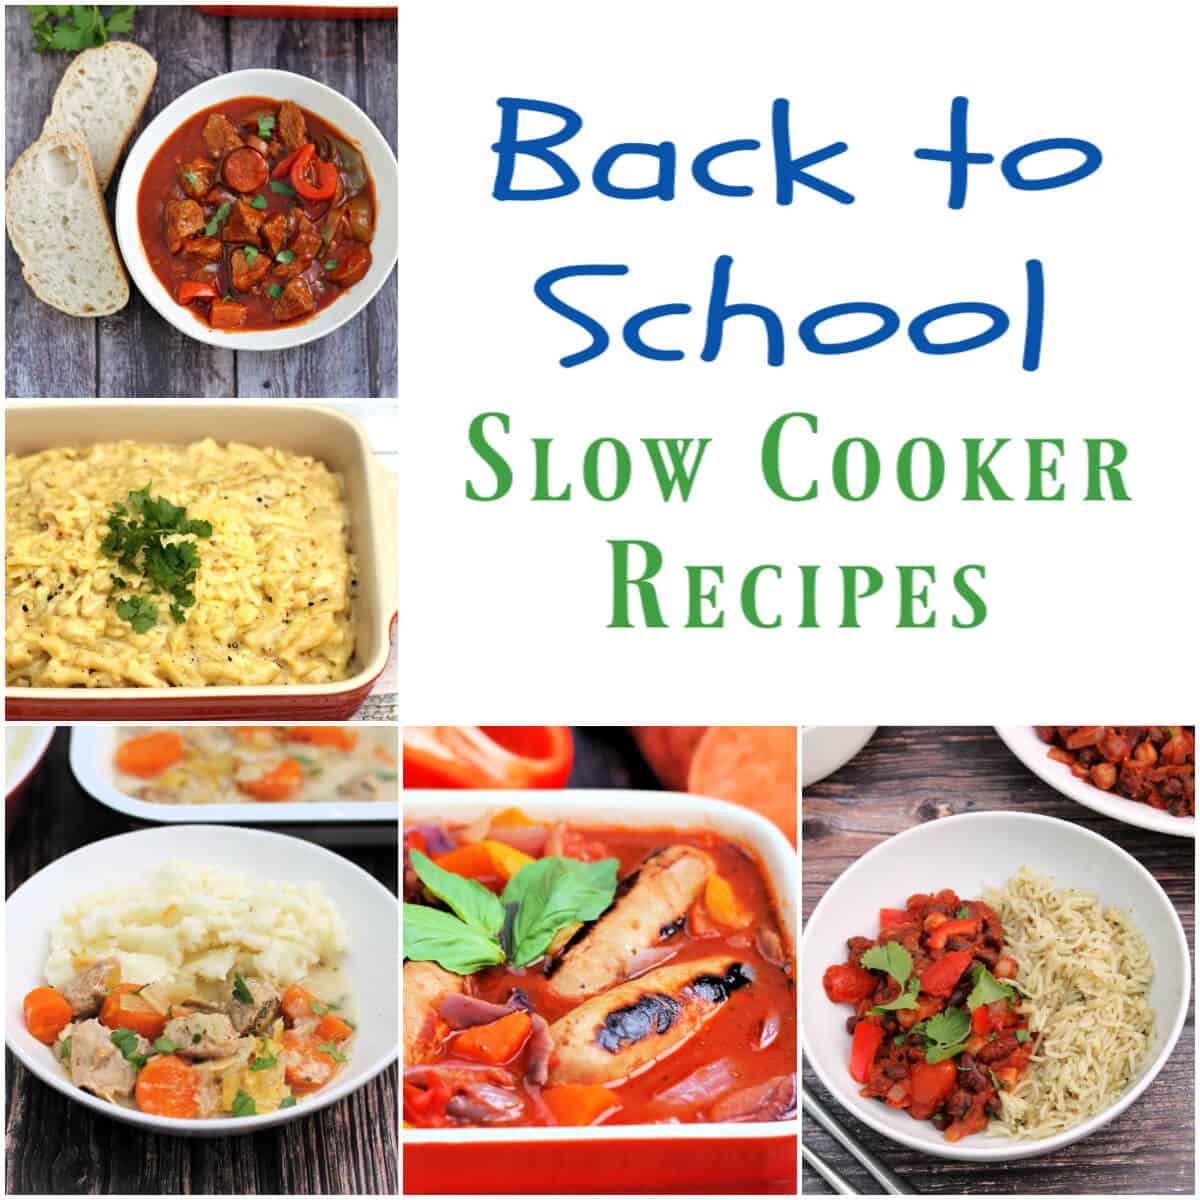 Back To School Slow Cooker Recipes - BakingQueen74